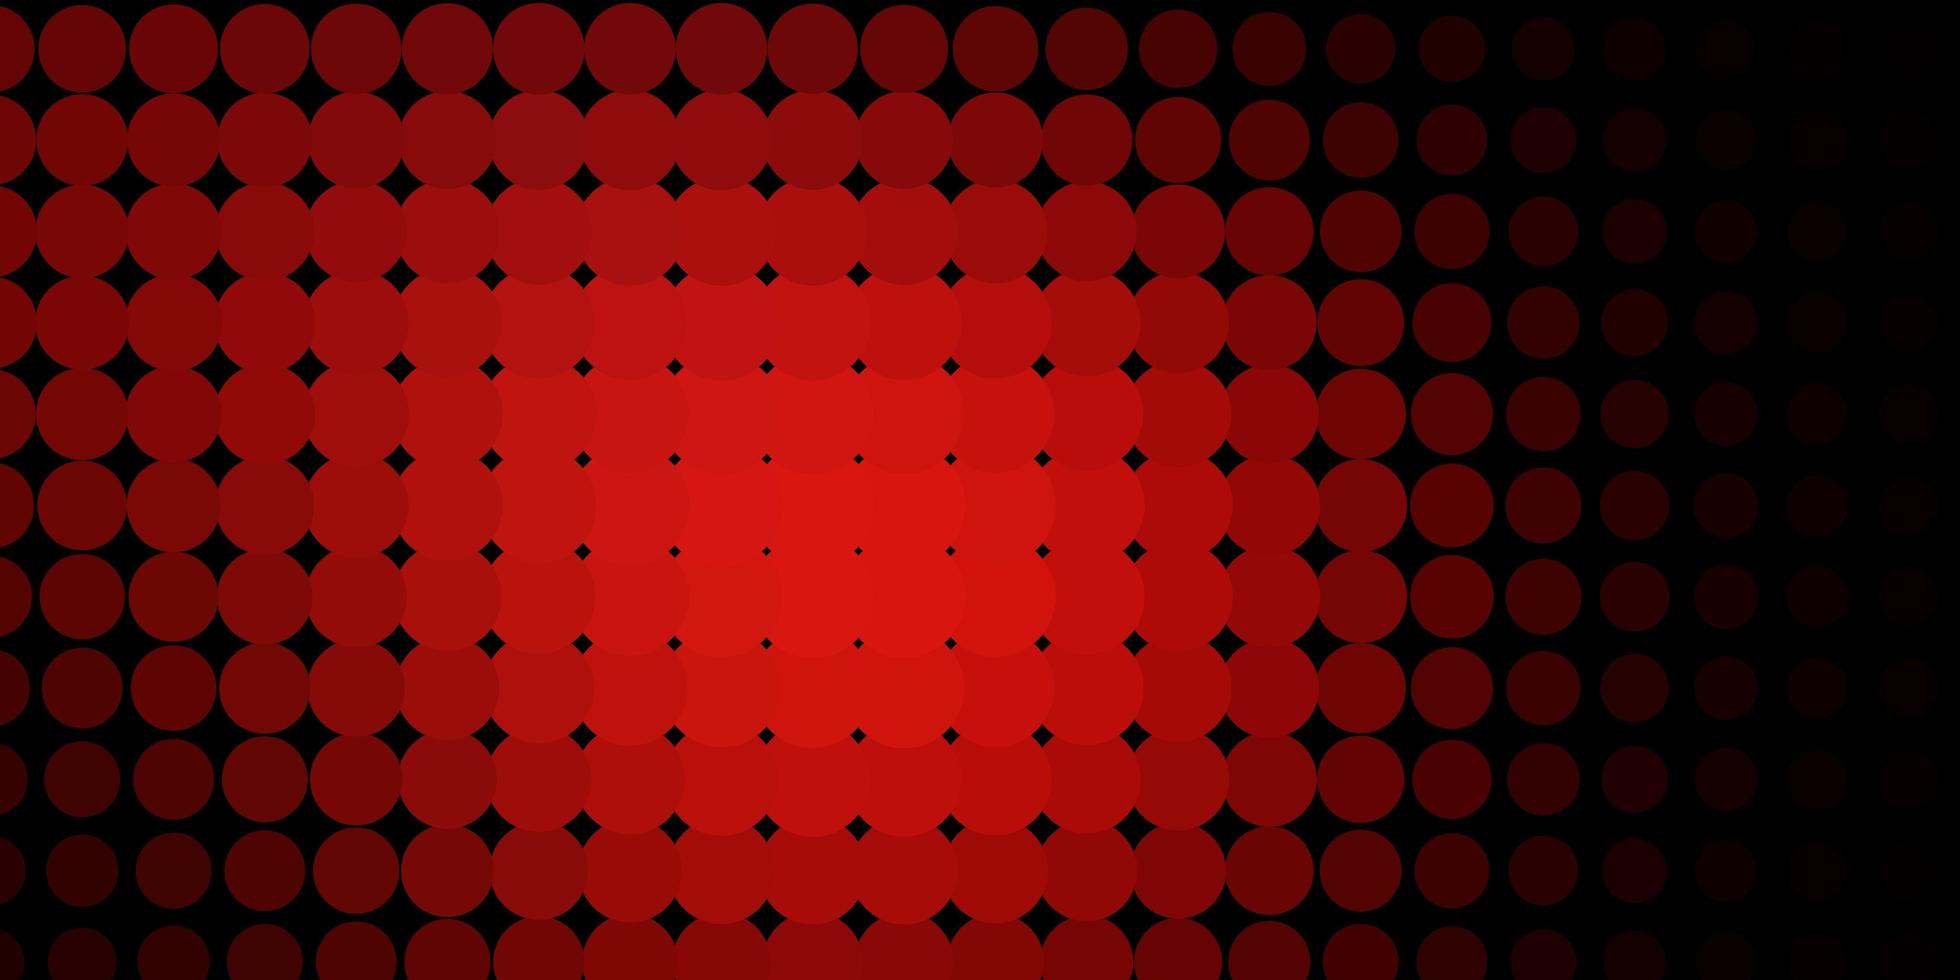 Fondo de vector rojo oscuro con círculos.